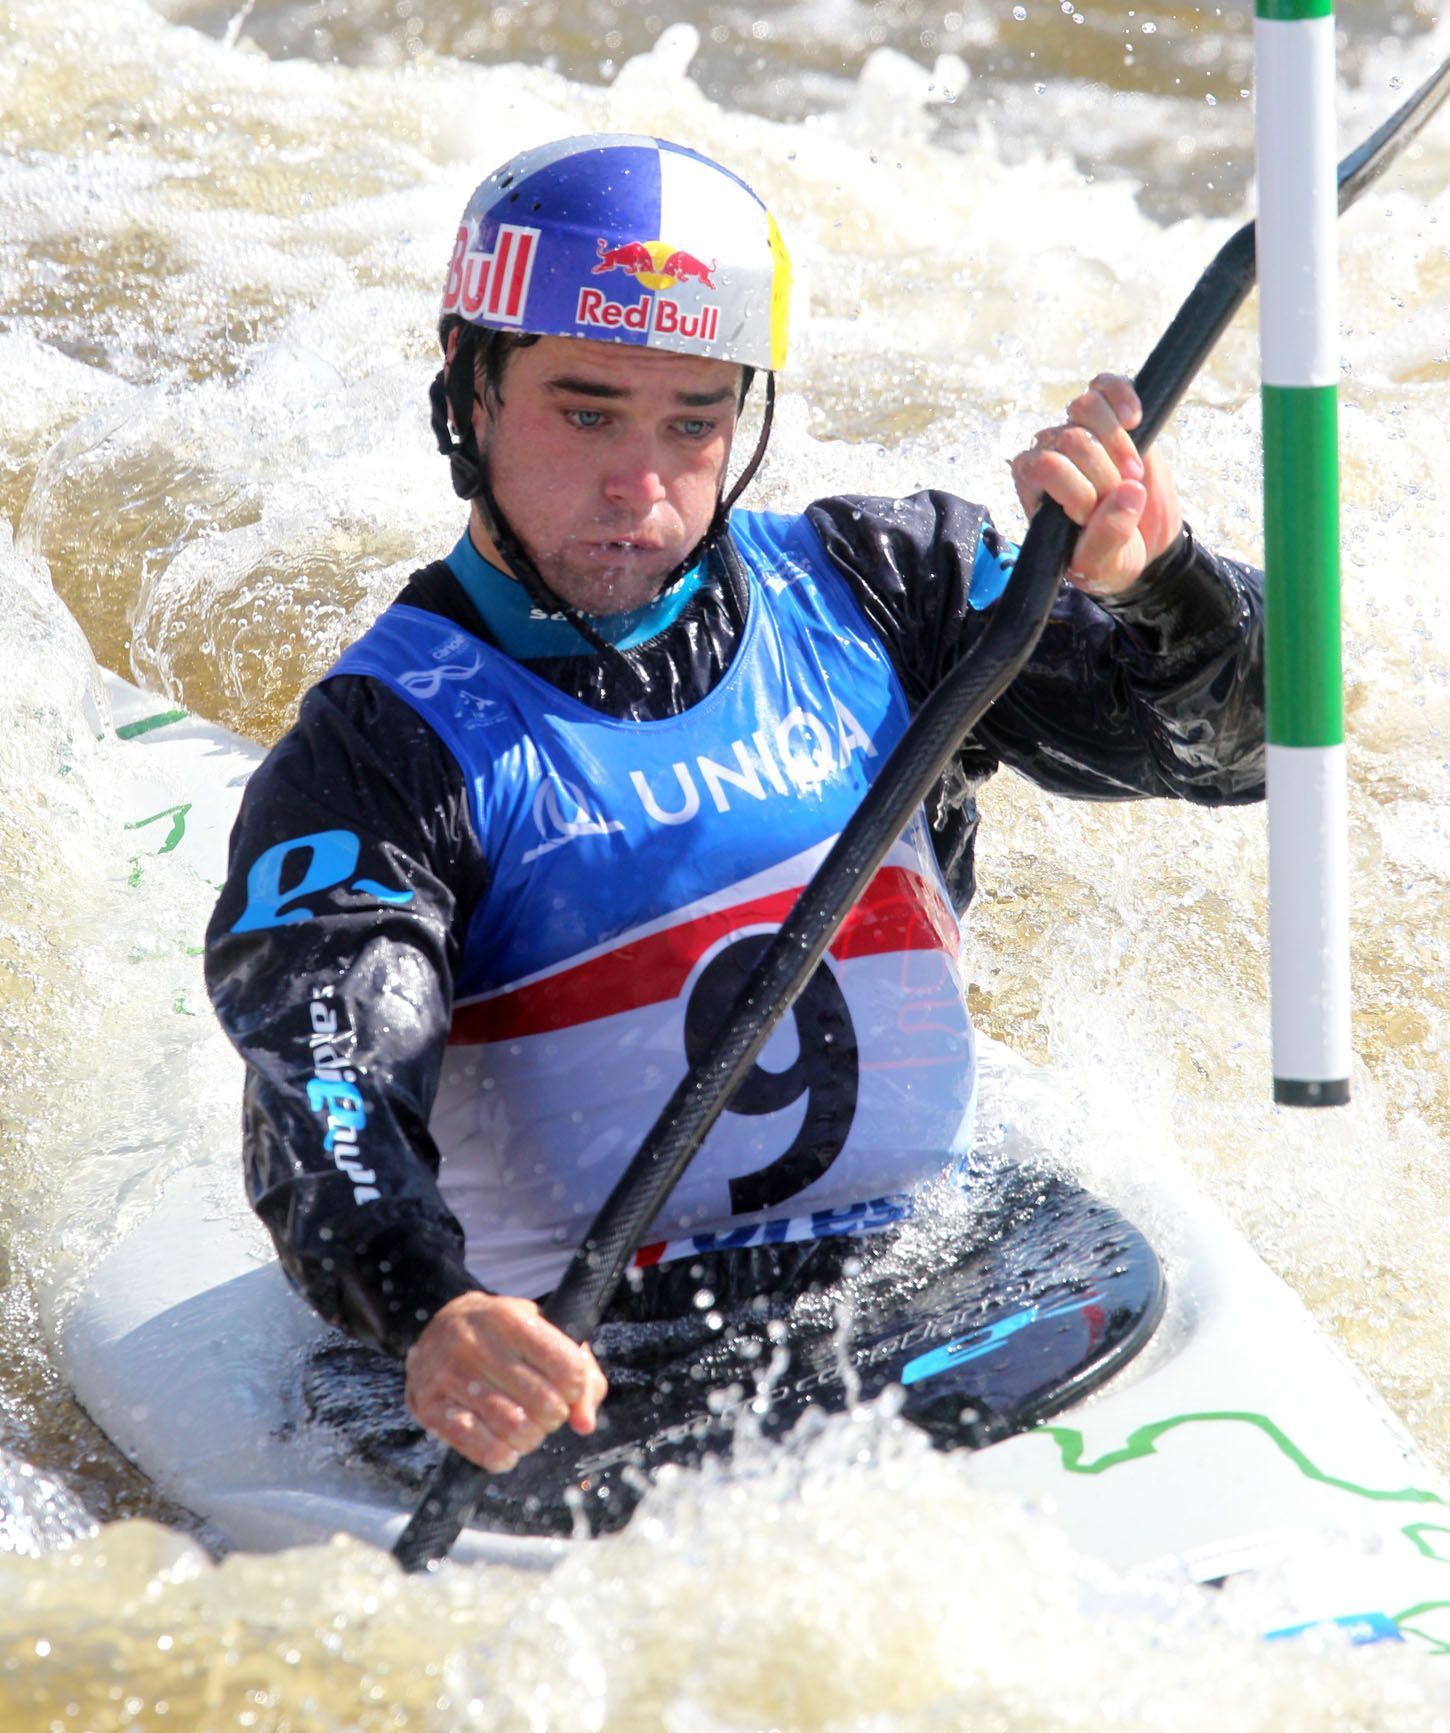 MS ve vodním slalomu 2013: Vavřinec Hradilek